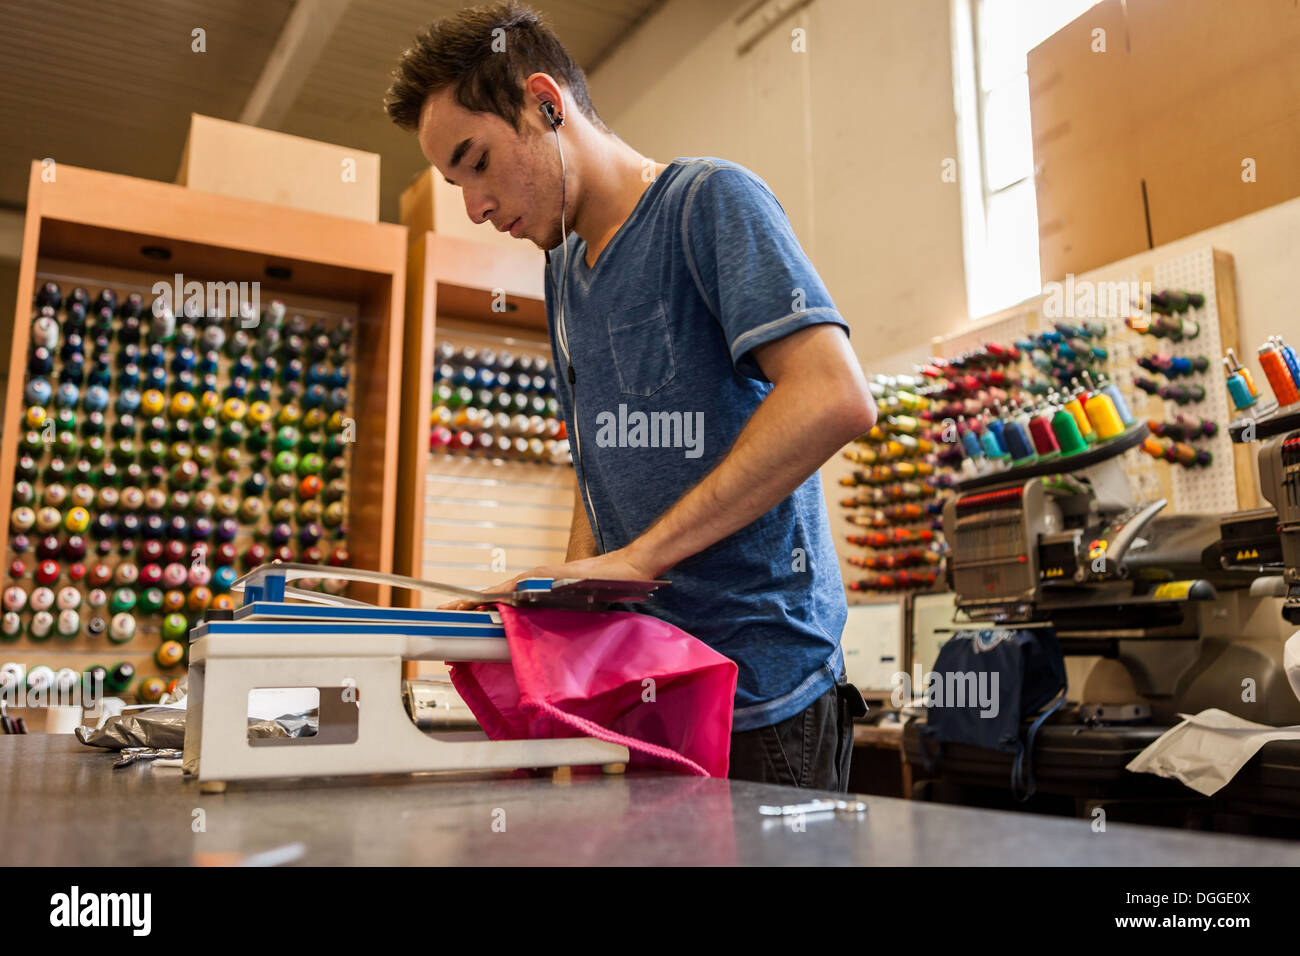 Arbeiter mit Stickmaschine in T-shirt Druck Werkstatt Stockfotografie -  Alamy